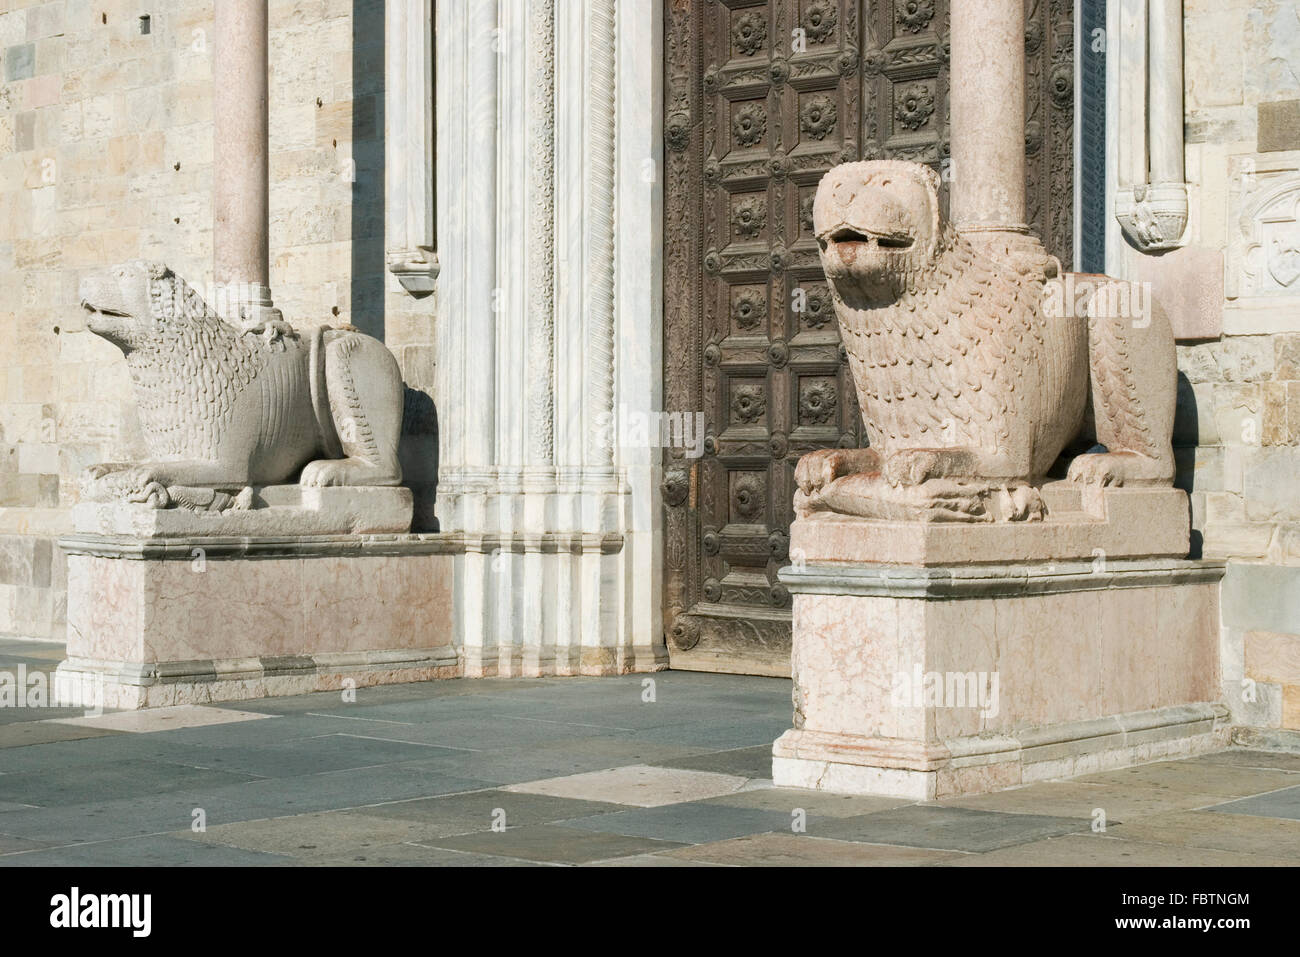 L'entrée de la cathédrale dell'Assunta Cathédrale avec lions de marbre des piliers, Parme, Émilie-Romagne, Italie Banque D'Images